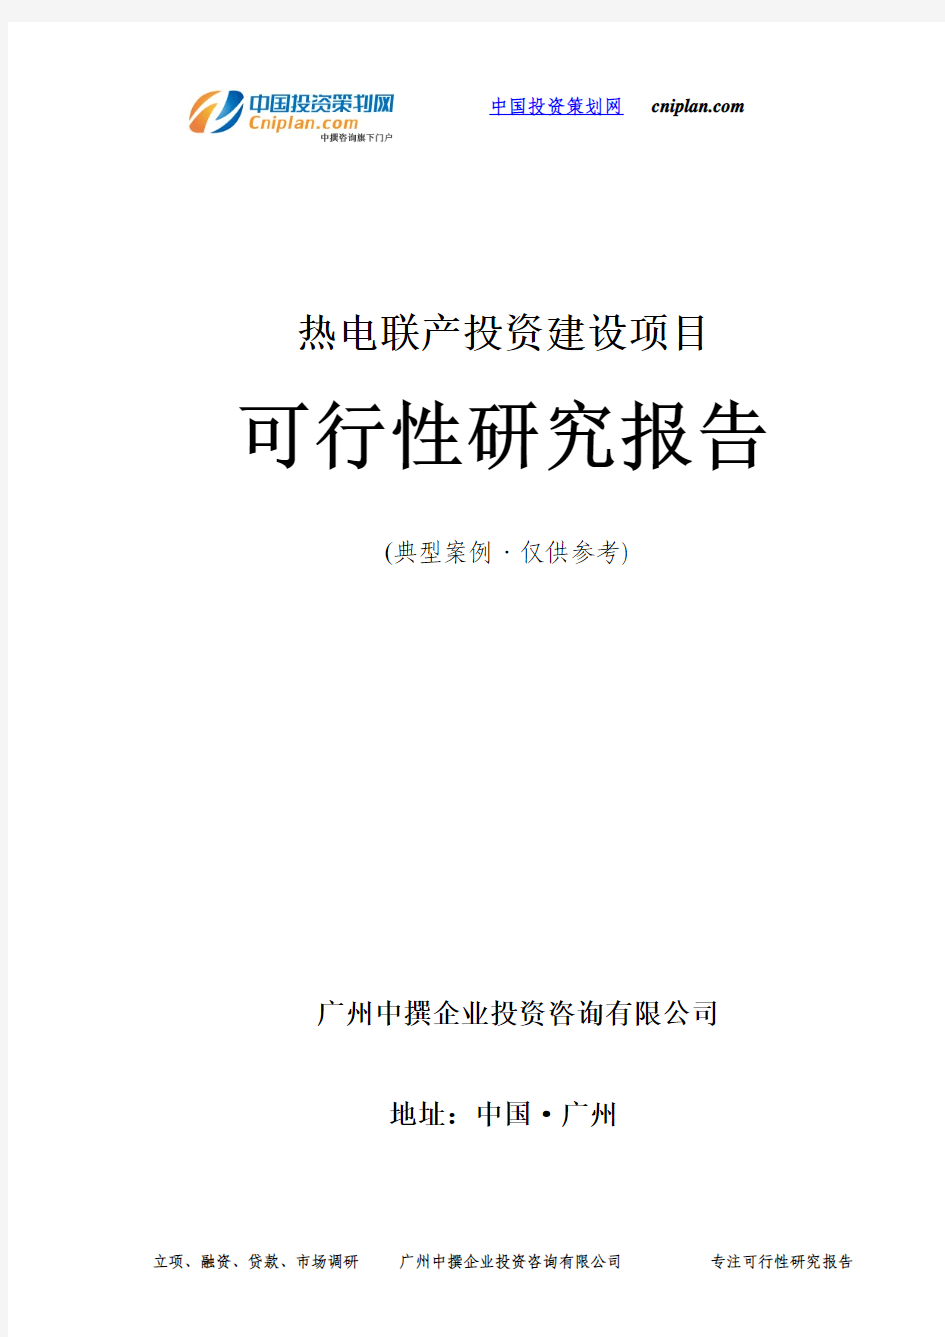 热电联产投资建设项目可行性研究报告-广州中撰咨询